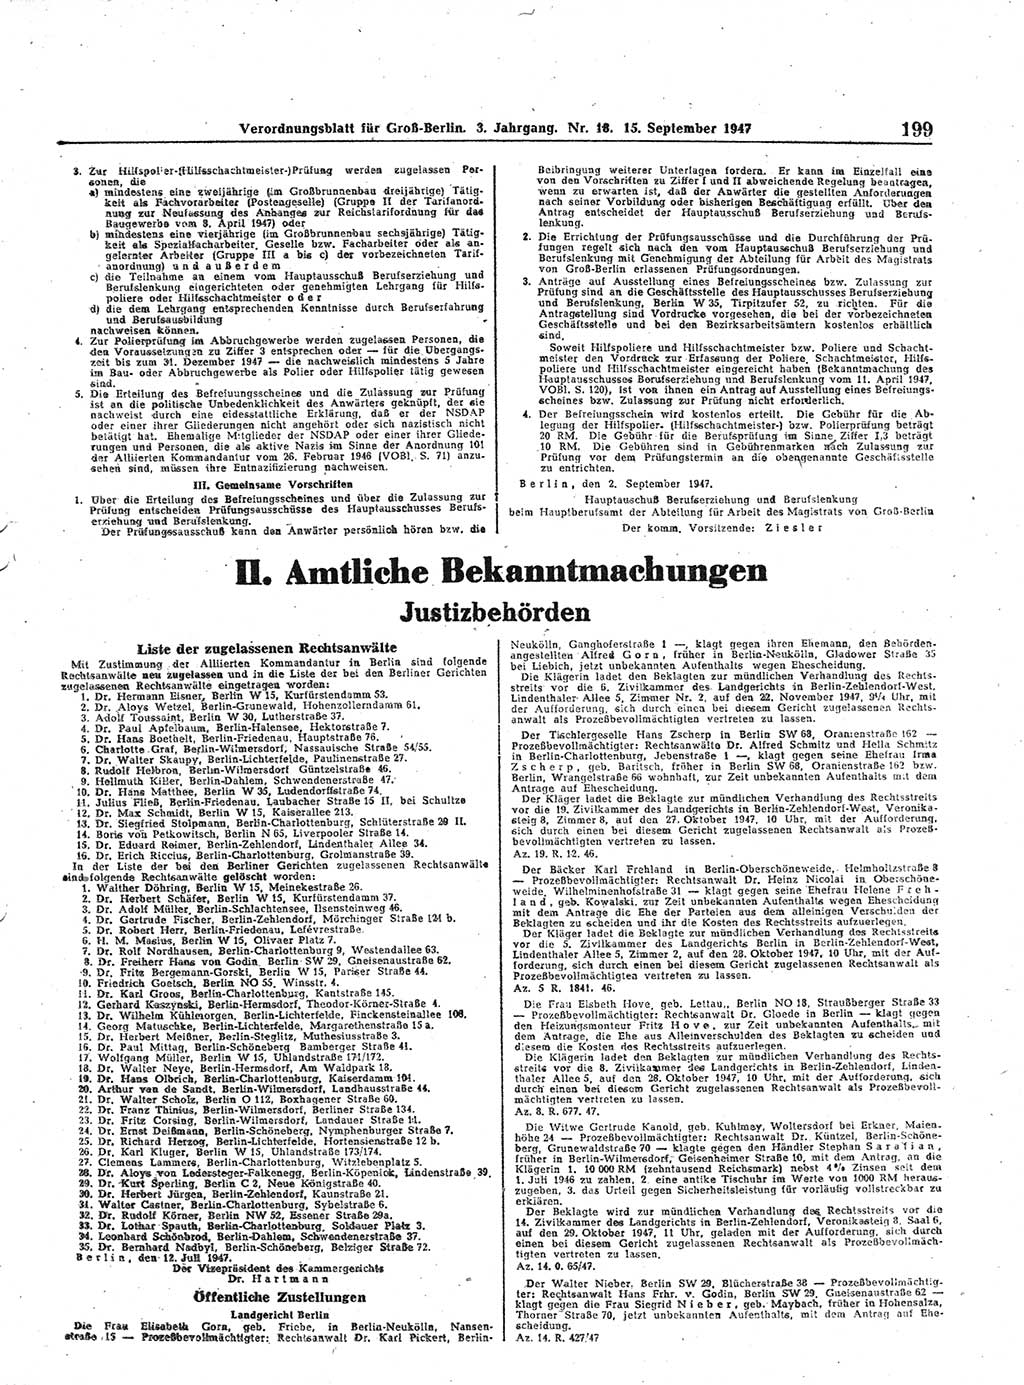 Verordnungsblatt (VOBl.) für Groß-Berlin 1947, Seite 199 (VOBl. Bln. 1947, S. 199)